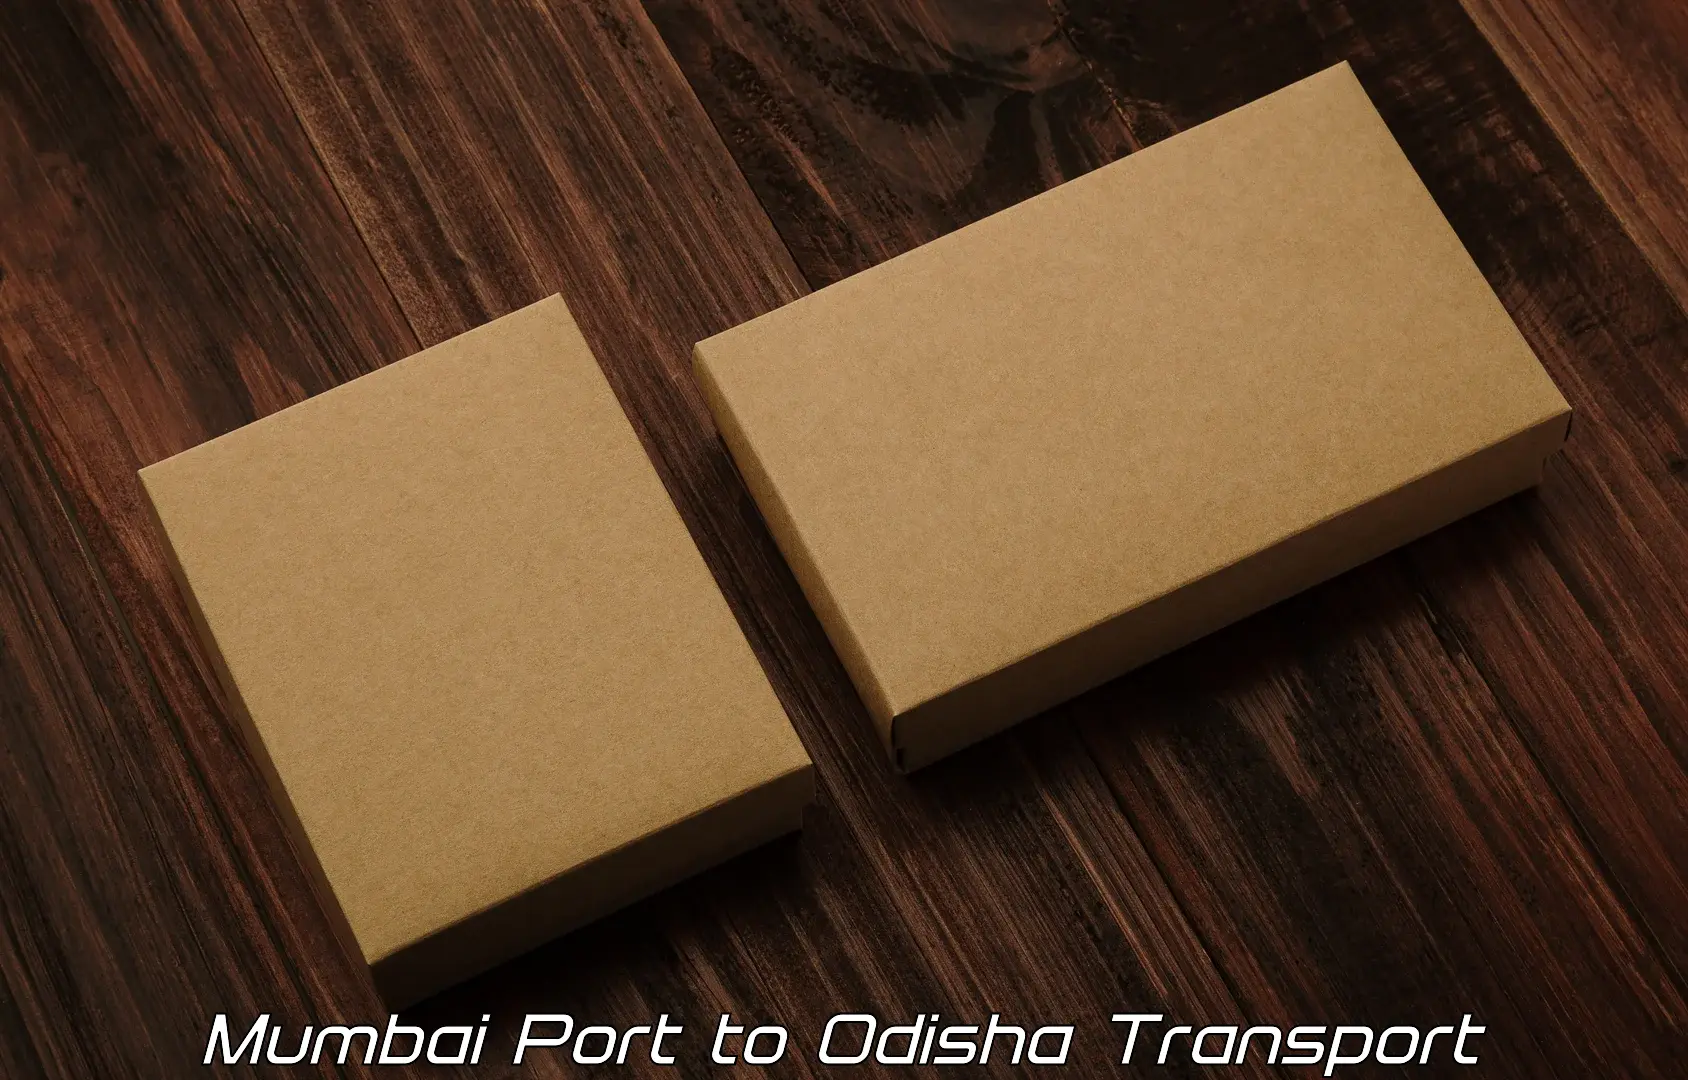 Luggage transport services Mumbai Port to Kalimela